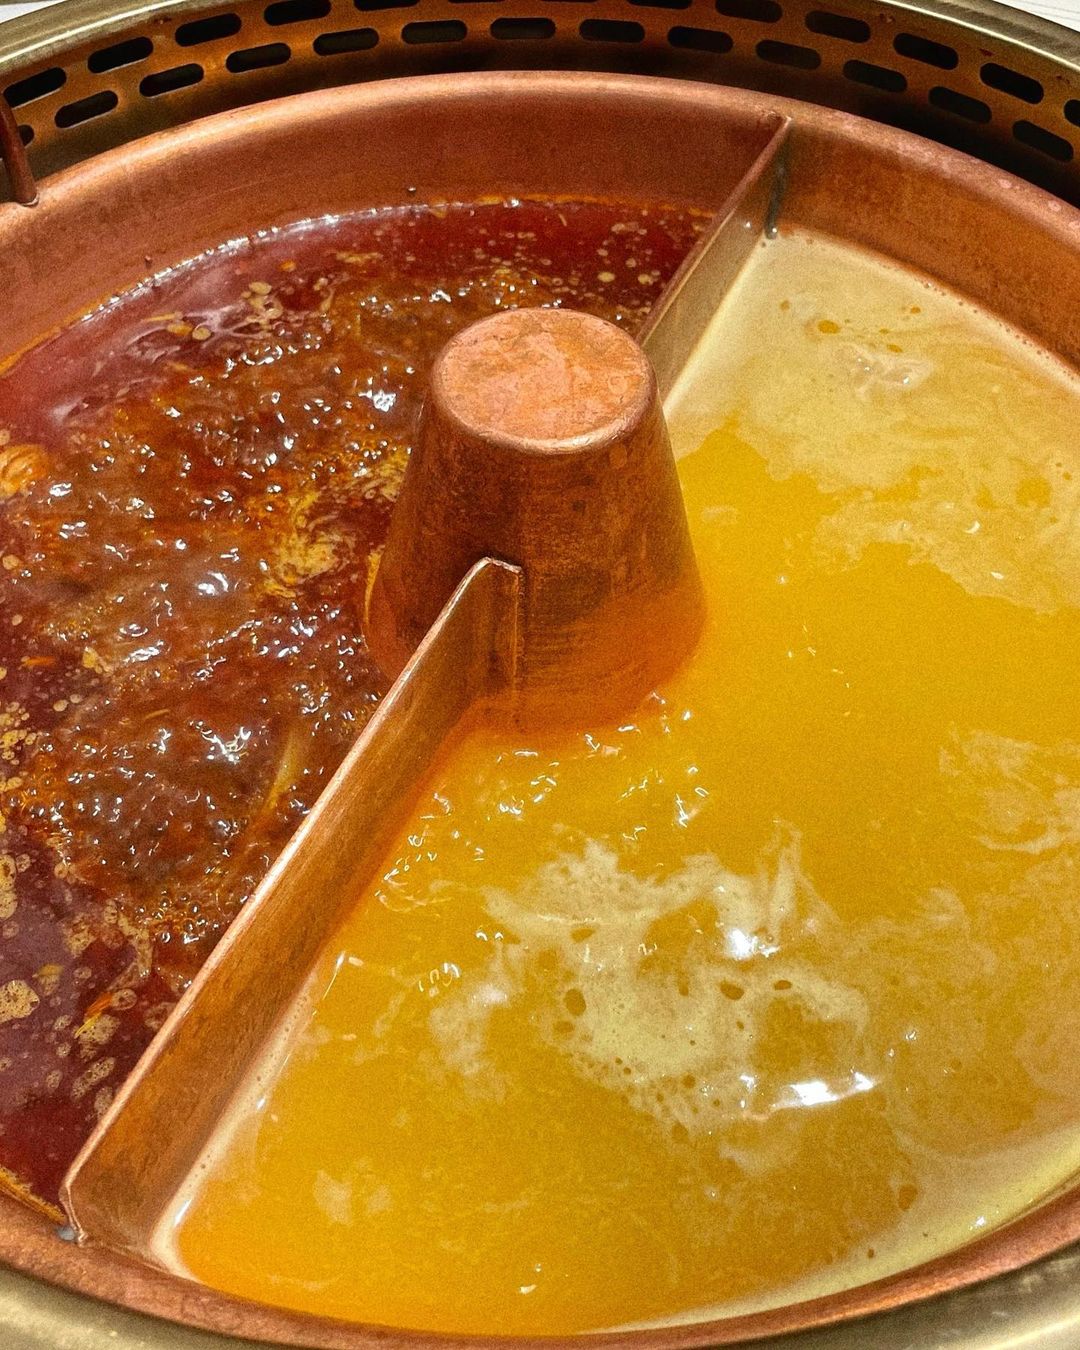 tong xin ru yi hotpot - golden chicken soup